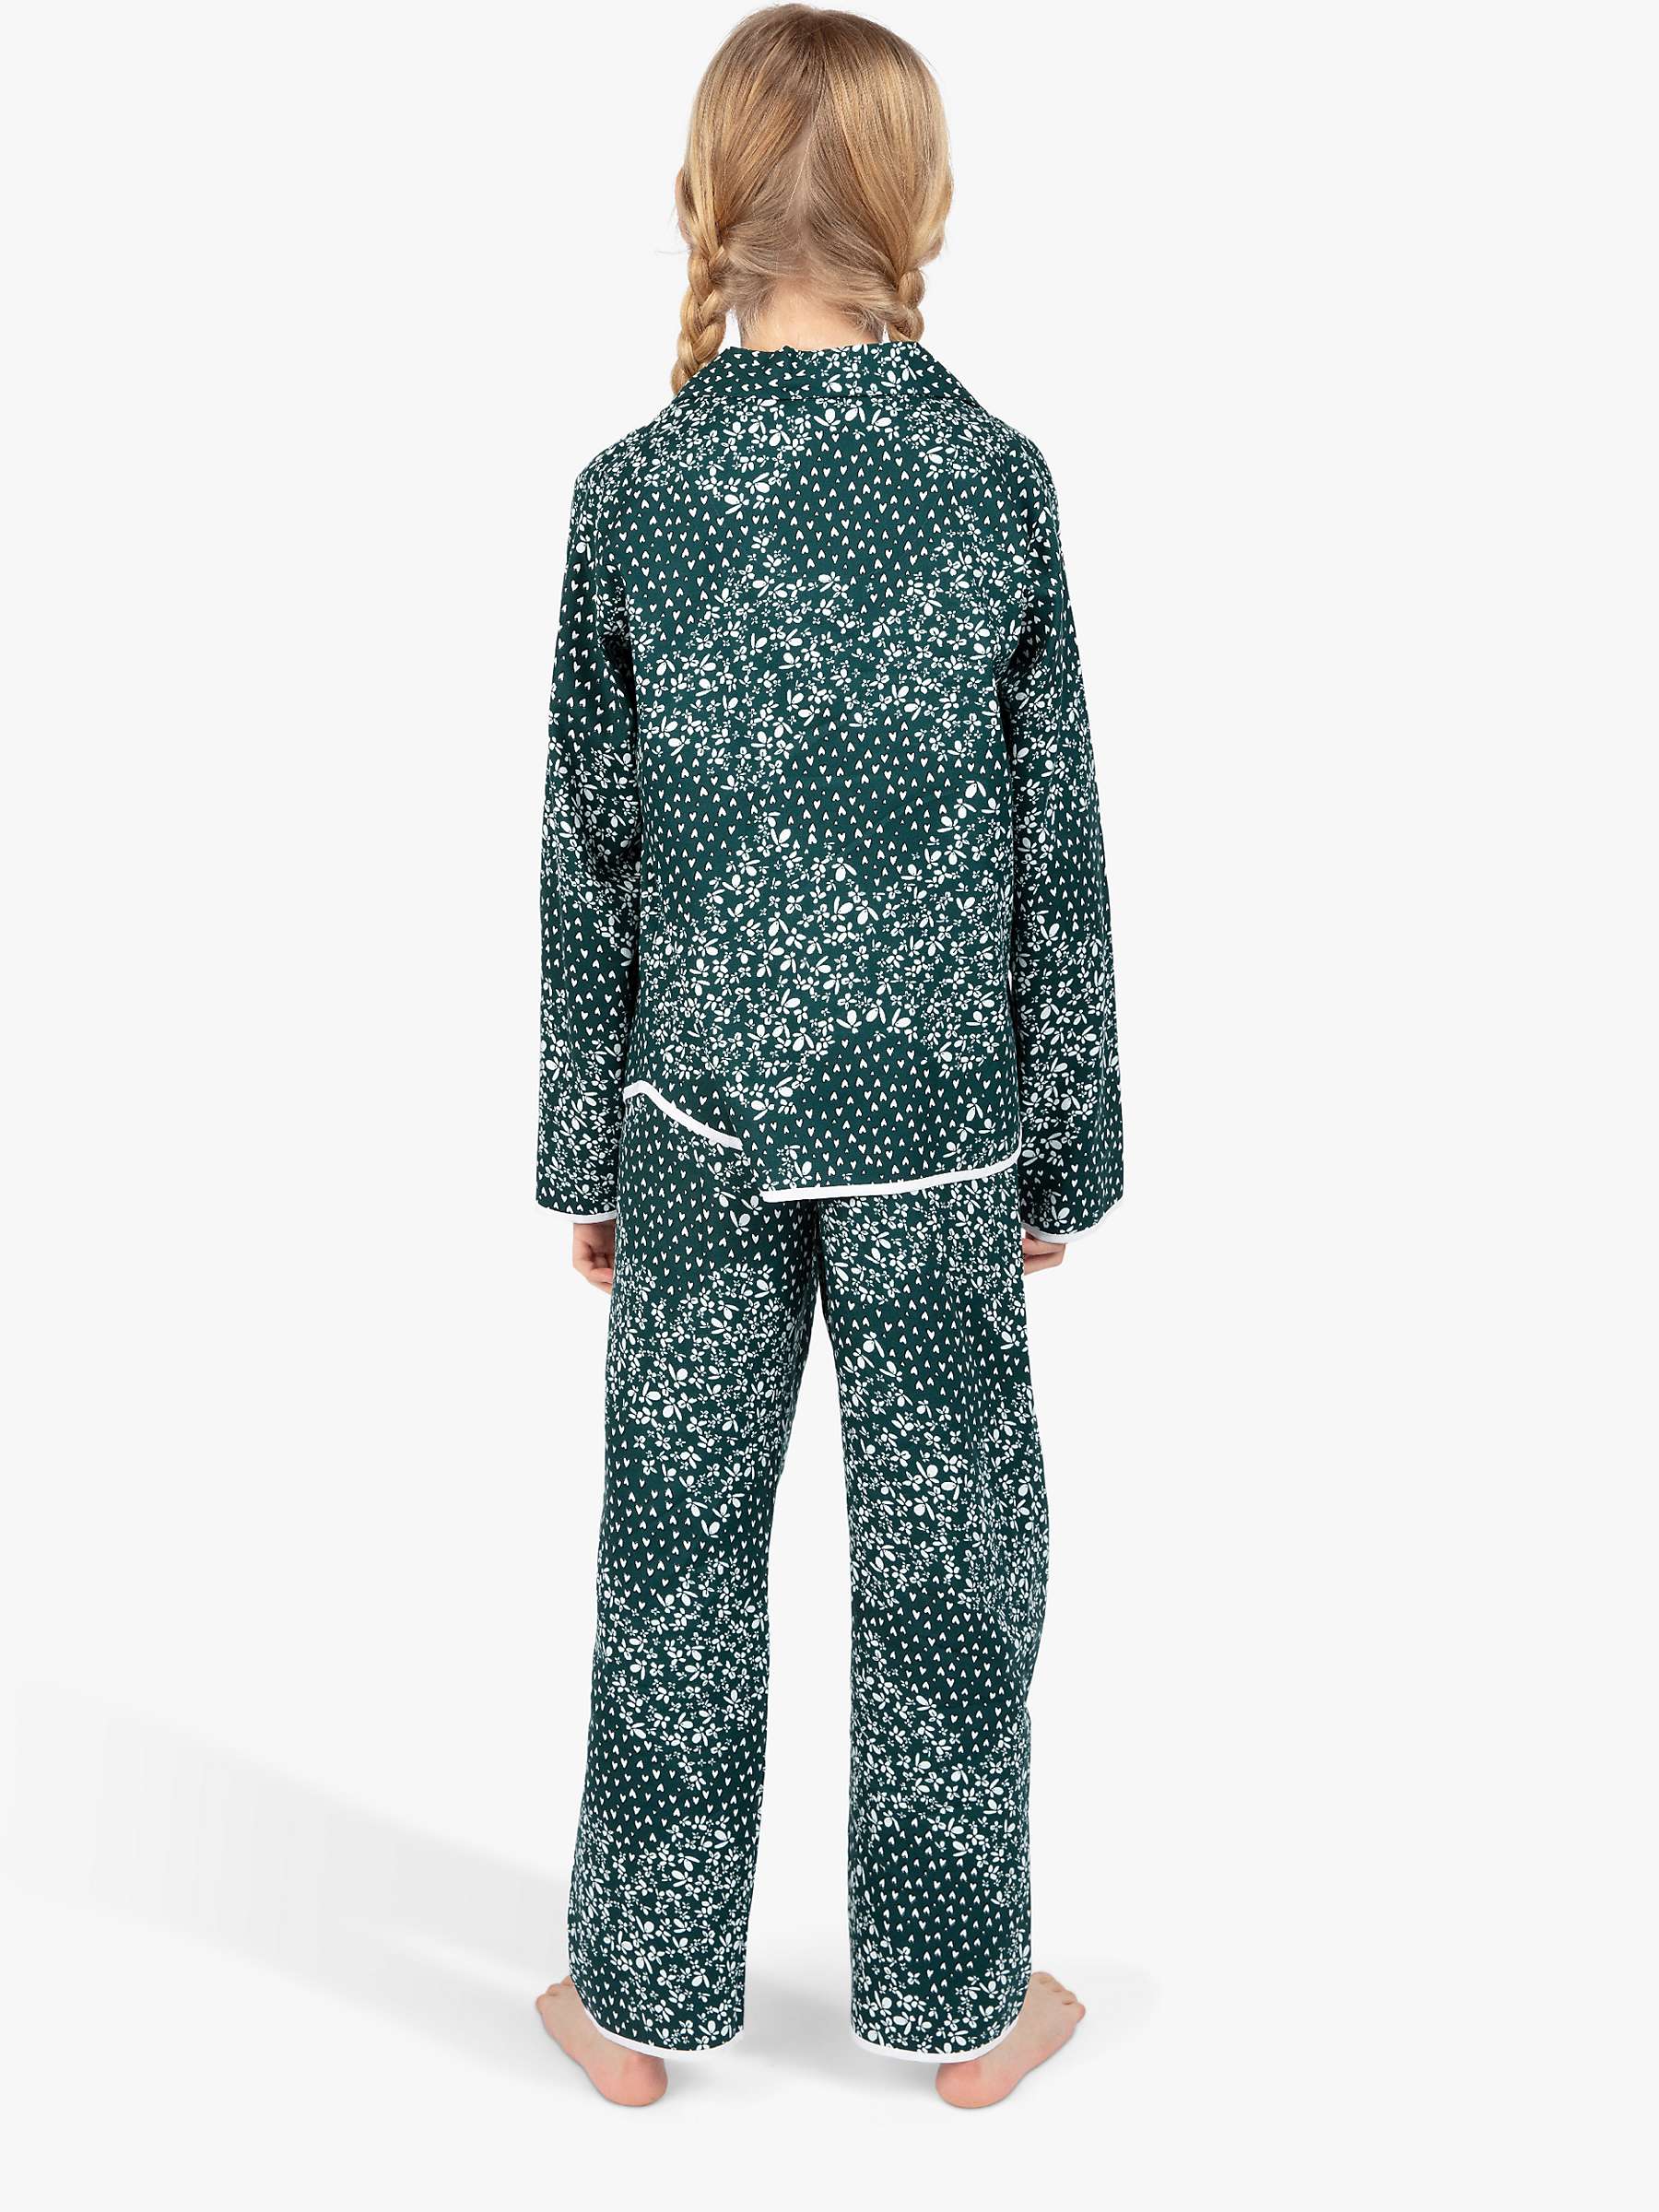 Buy Cyberjammies Kids' Penny Ditsy Heart Print Pyjama Set, Emerald/Multi Online at johnlewis.com